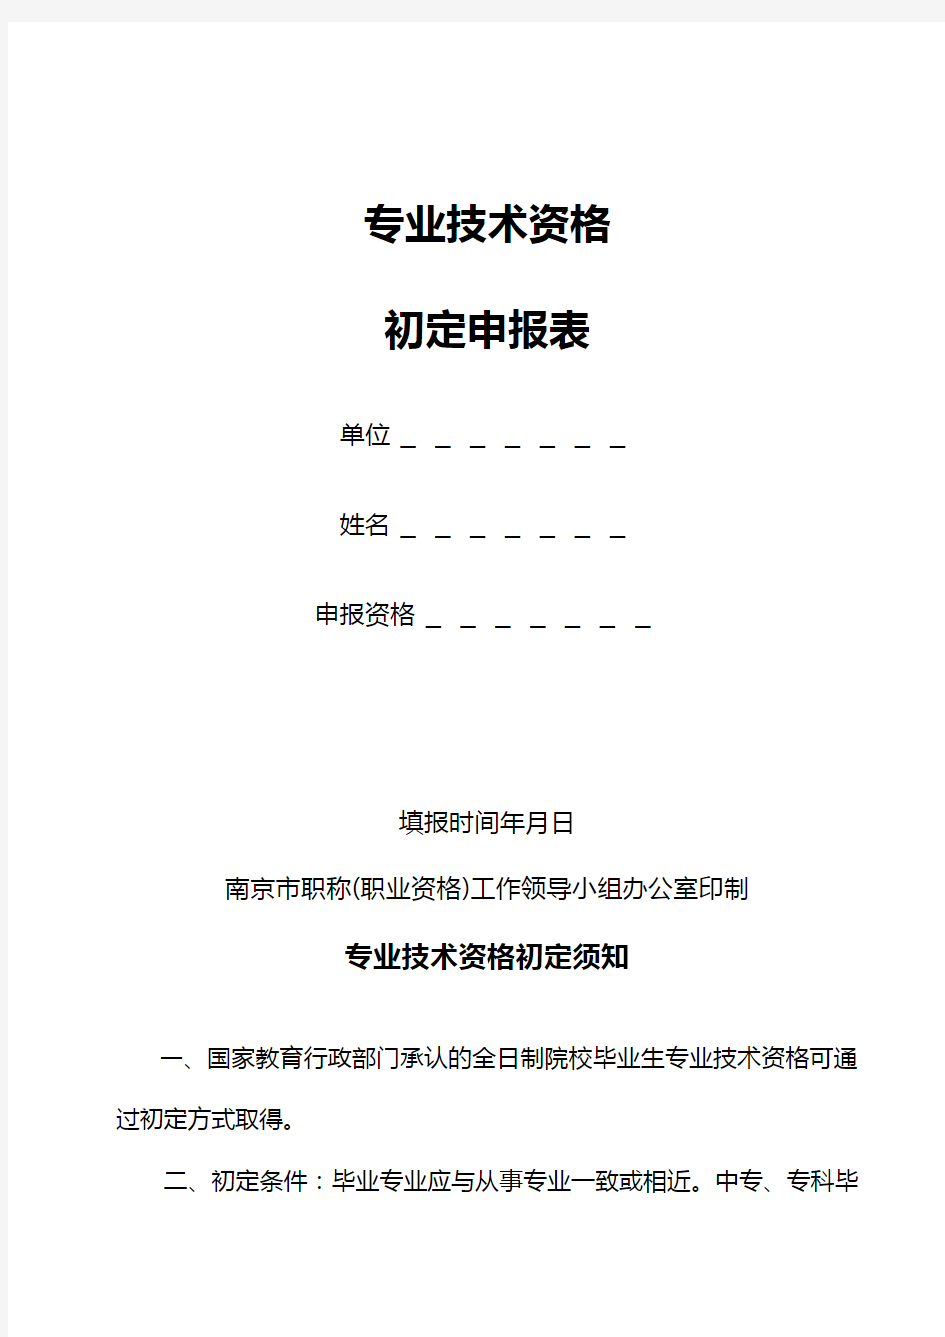 南京市专业技术资格初定申报表